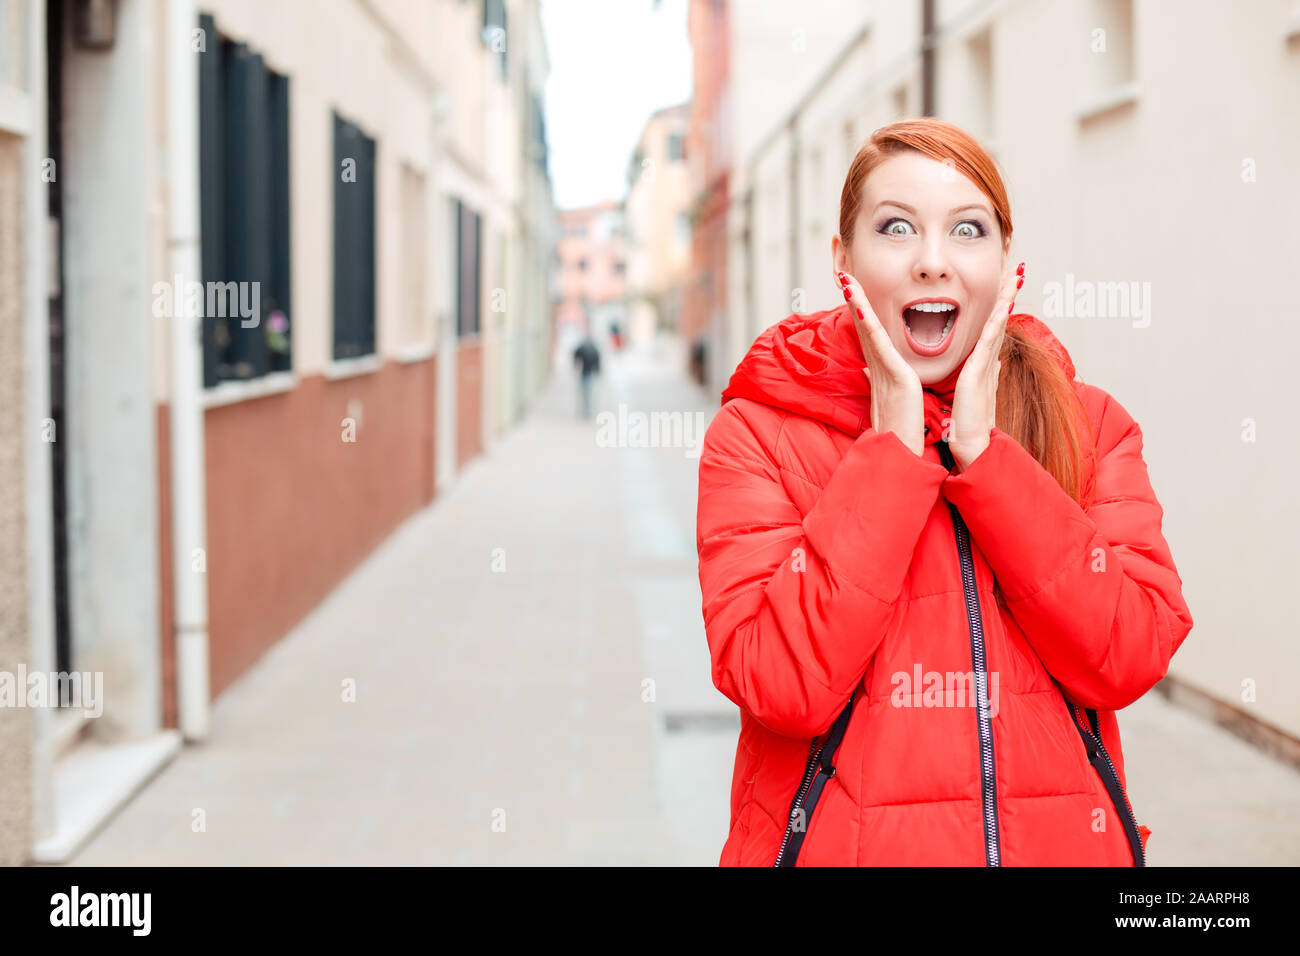 Traiter ou vendre, nouvelle choquante. Femme choqué à Murano, Venise, Italie. Modèle irlandais en manteau d'hiver rouge vêtements, cheveux roux standing on urban backgroun Banque D'Images